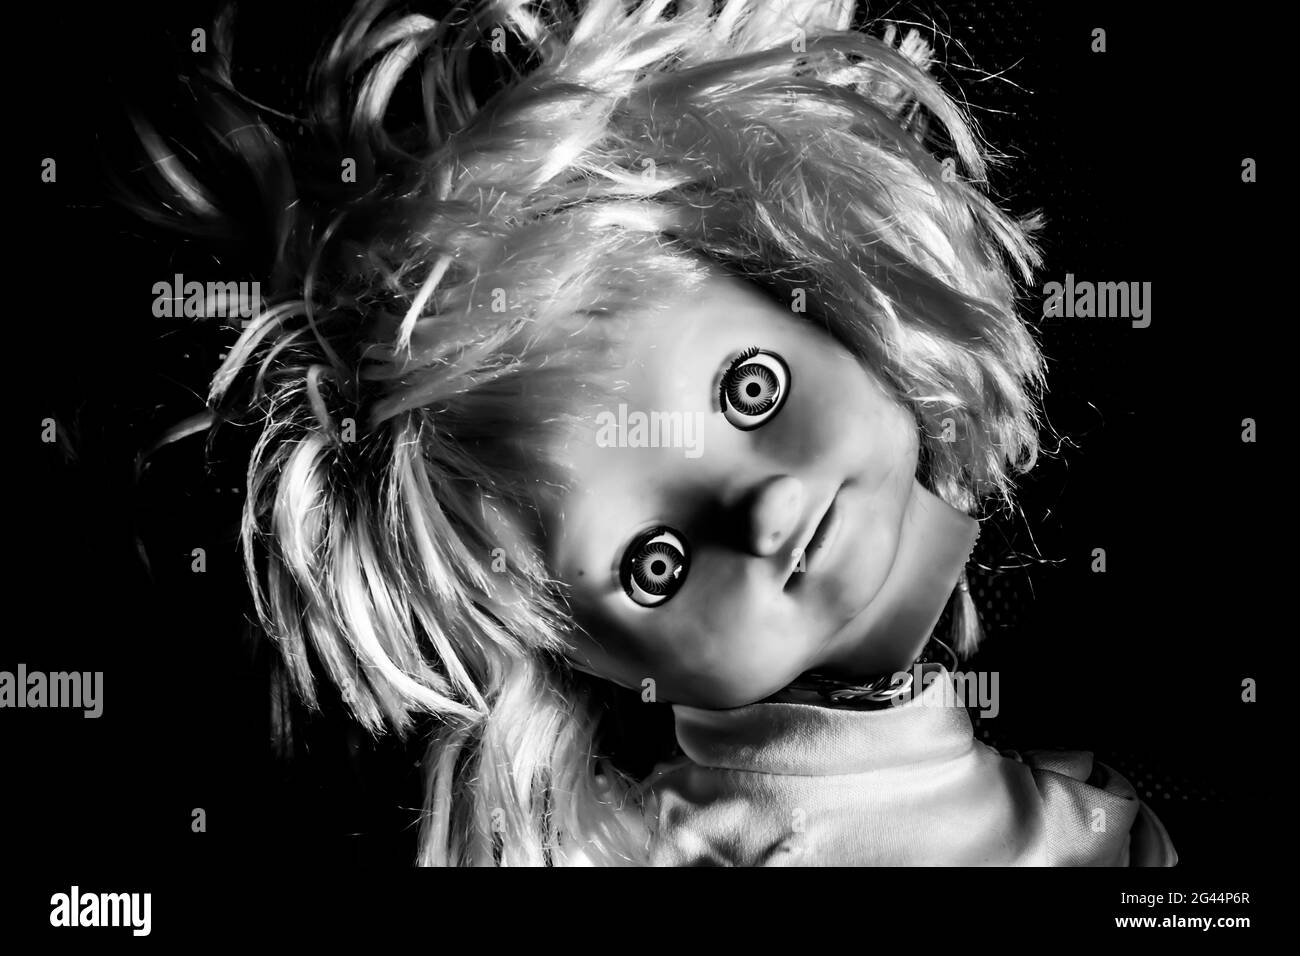 Gruselige Mädchen Puppe Gesicht. Es scheint wie ein Horrorfilm-Charakter zu sein. Wütend Baby Puppe, Angst vor lebenden Geist. Halloween-Konzept. Schwarz Stockfoto